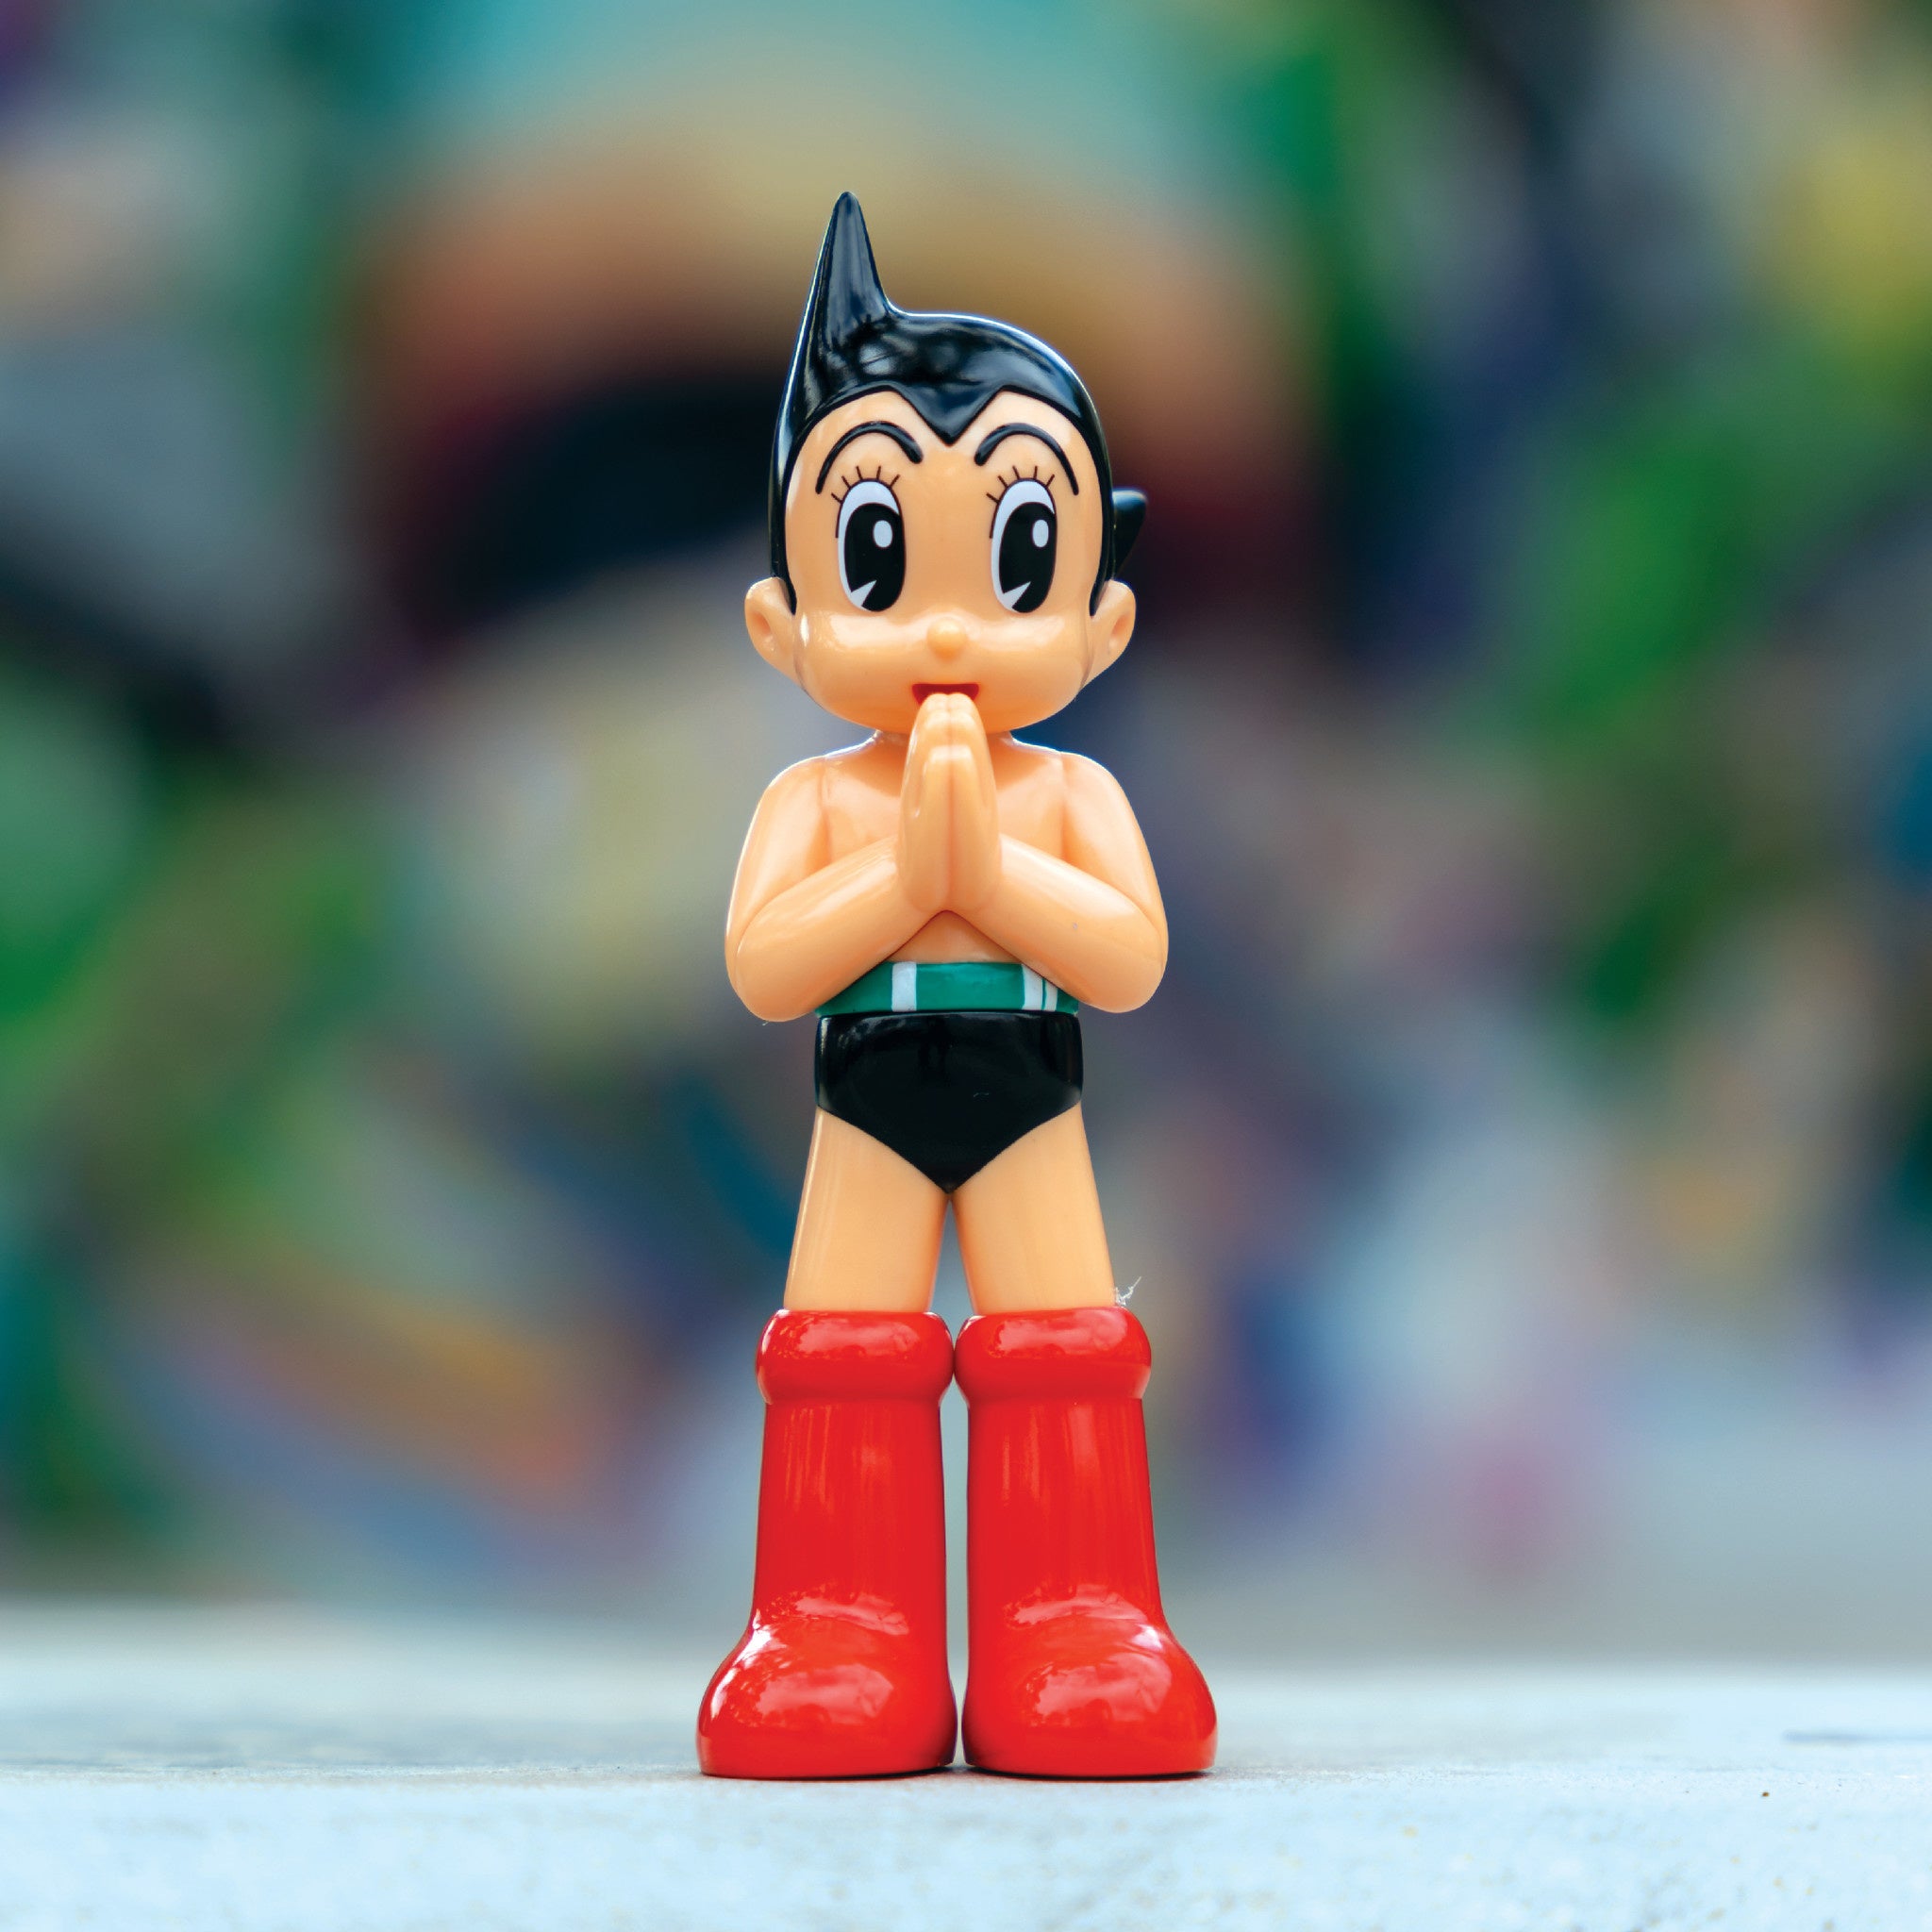 Astro Boy Greeting 6 inch - Wynwood Walls Shop